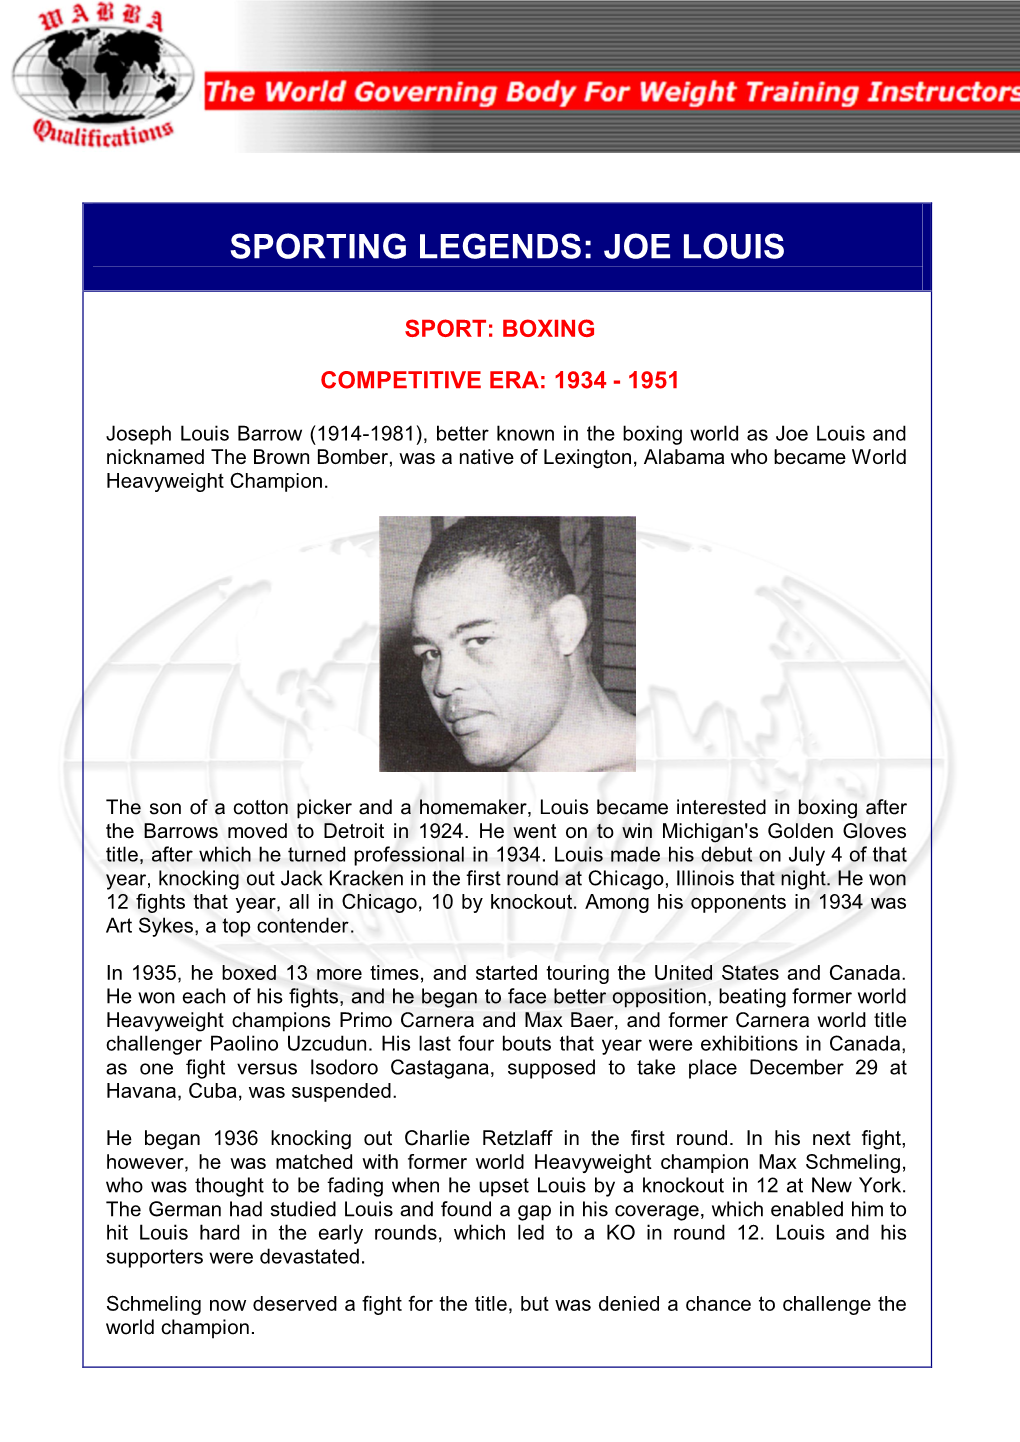 Sporting Legends: Joe Louis